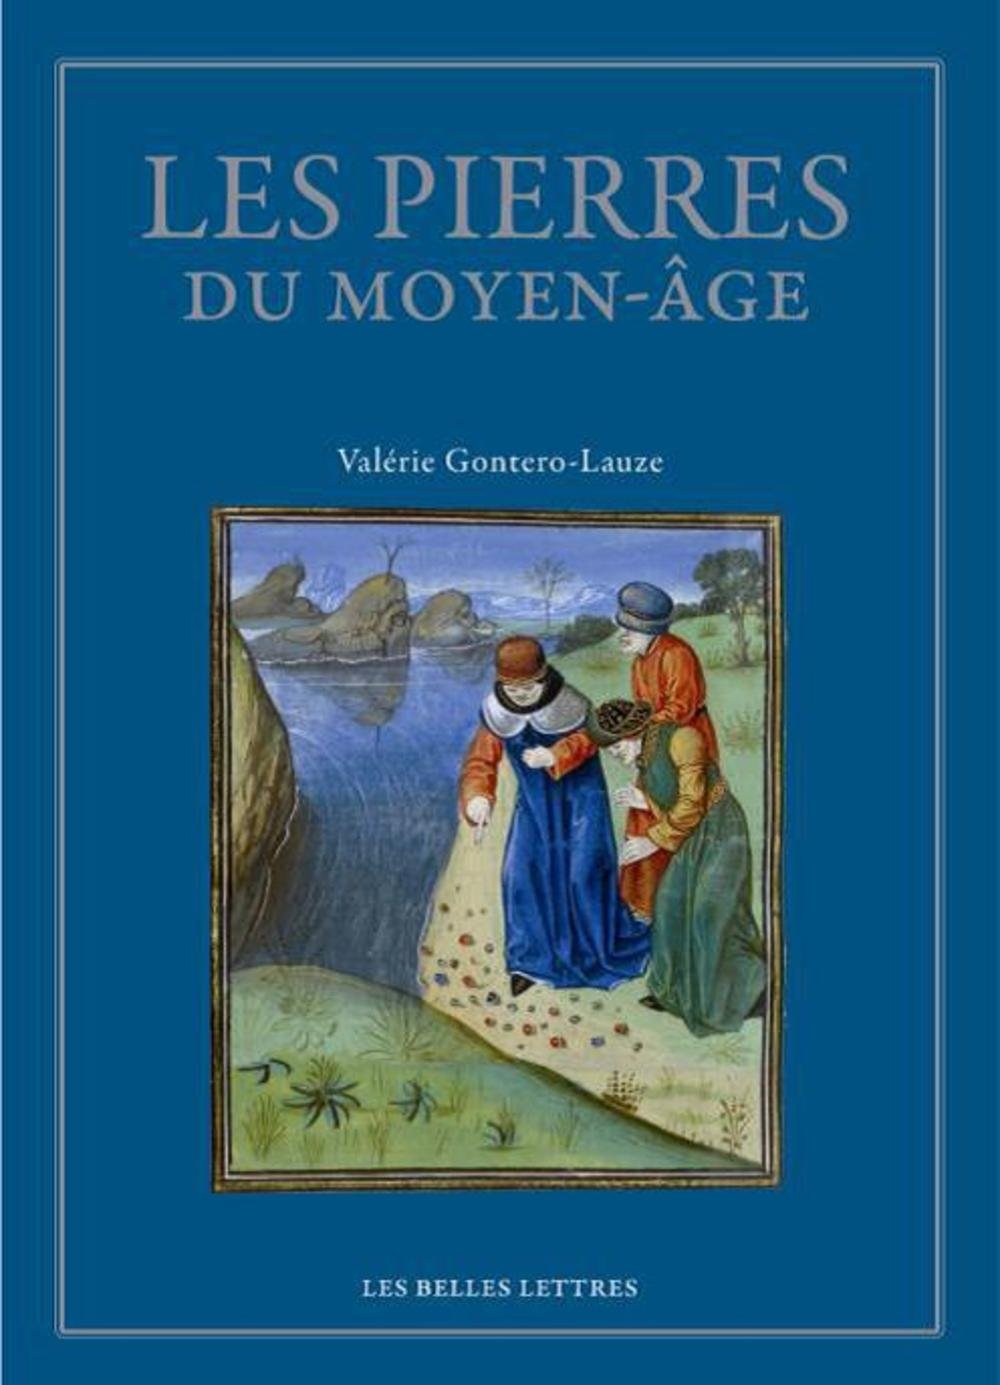 Les Pierres du Moyen Âge. Anthologie des lapidaires médiévaux, 2016, 226 p.